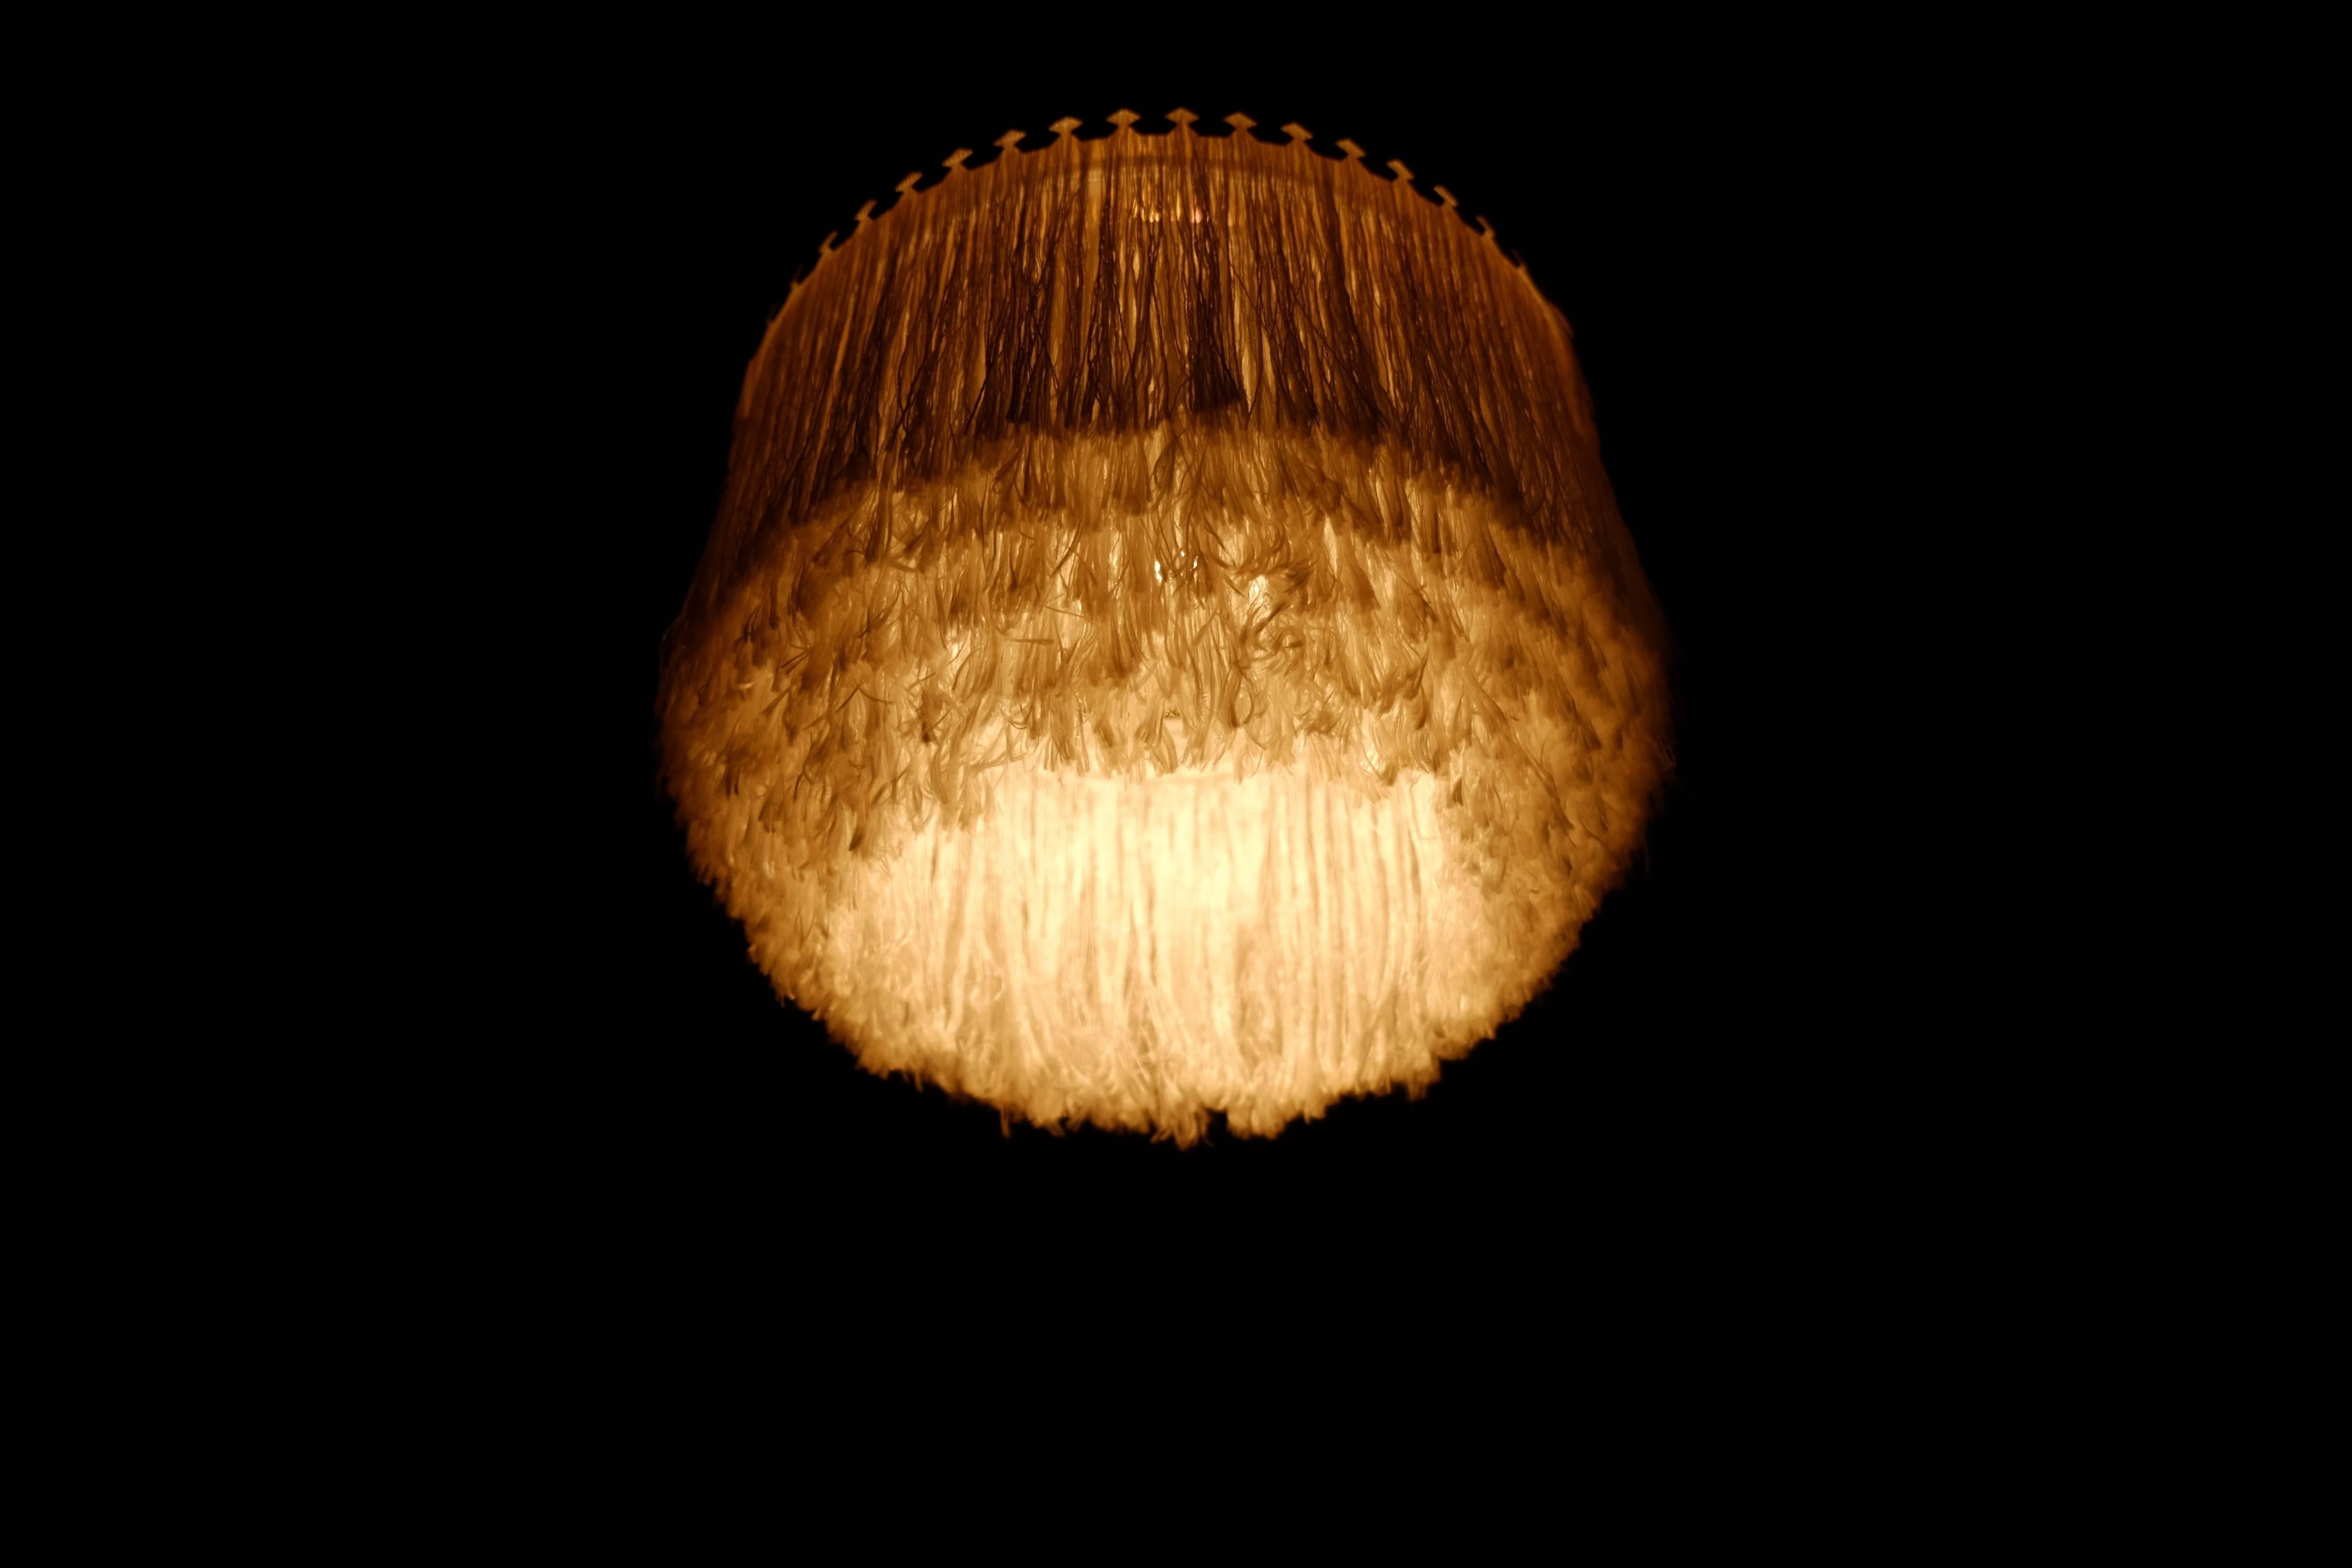 Brass Hans-Agne Jakobsson Ceiling Lamp